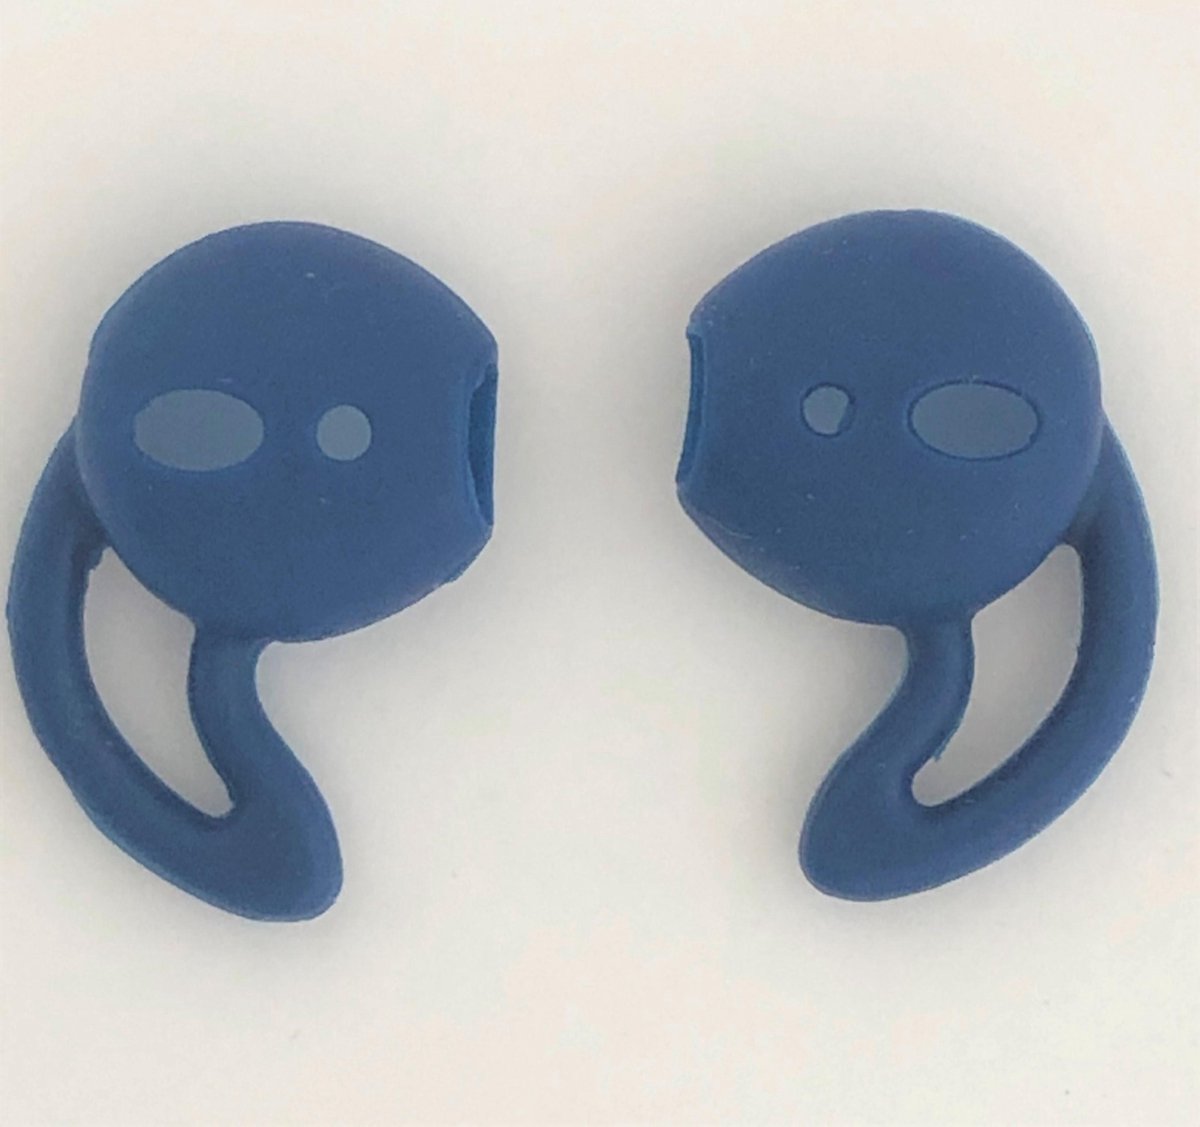 KELERINO. Anti-slip siliconen earhooks / earhoox / oorhaken geschikt voor Airpods 1 & 2 - Donkerblauw